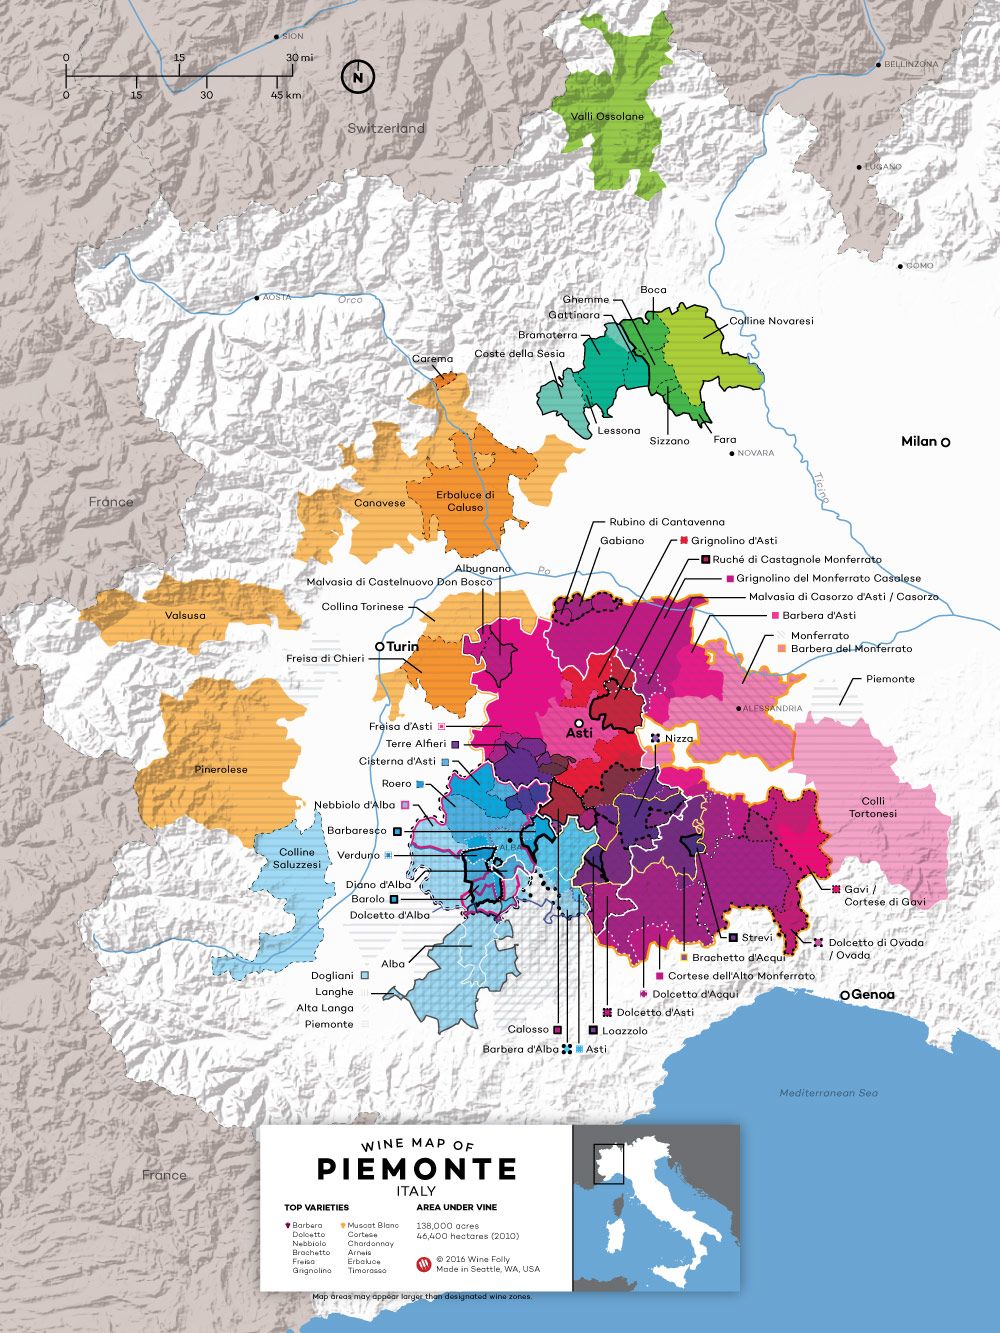 Dades del vi Nebbiolo: gràfic de radars del perfil de tastos de Wine Folly